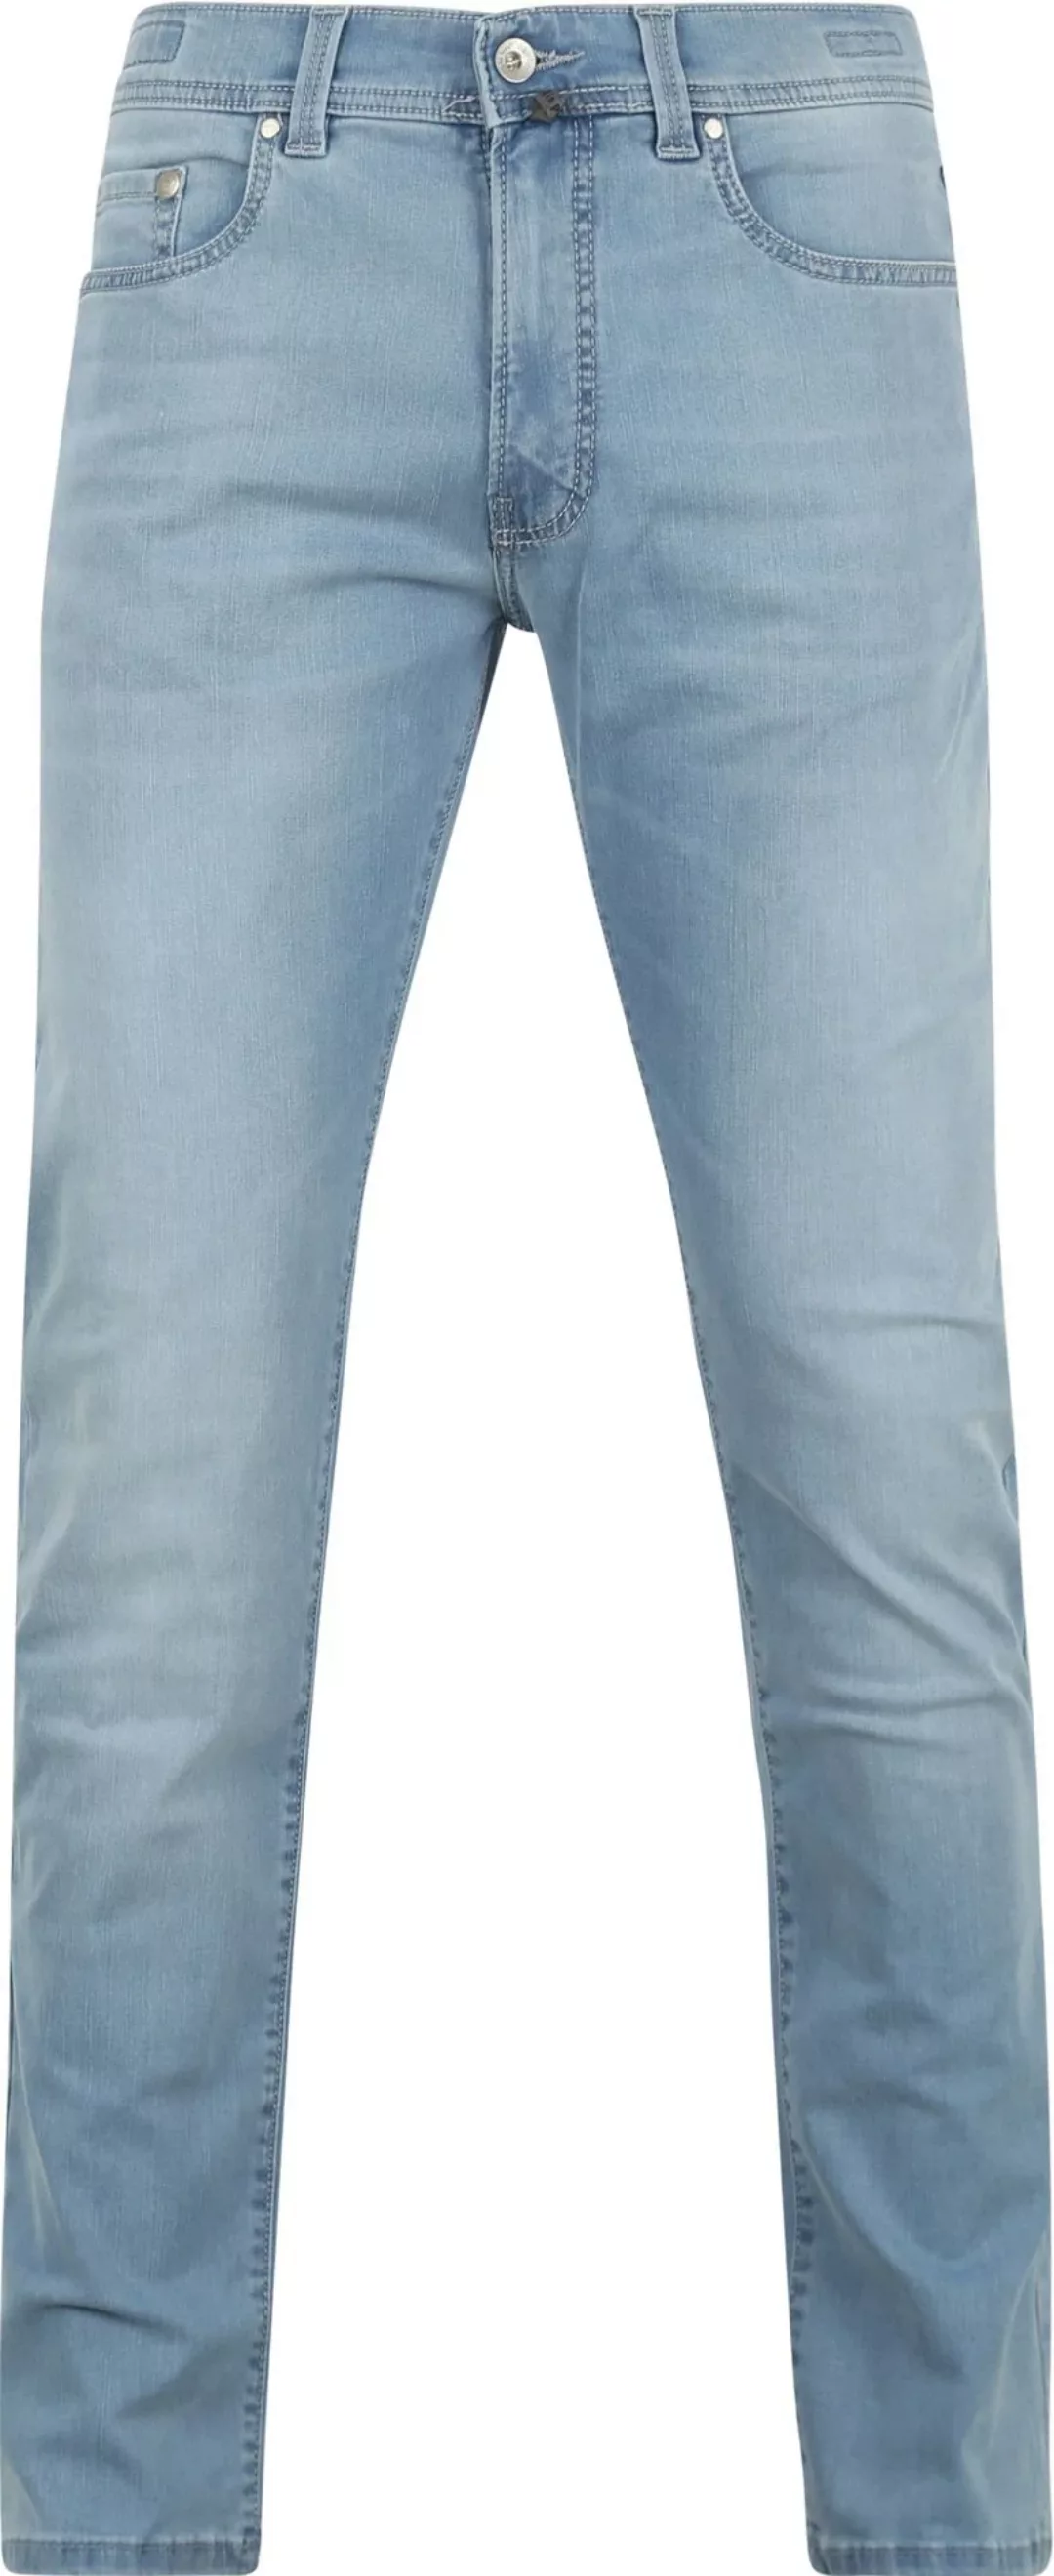 Pierre Cardin Jeans Lyon Tapered Future Flex Hellblau  - Größe W 38 - L 34 günstig online kaufen